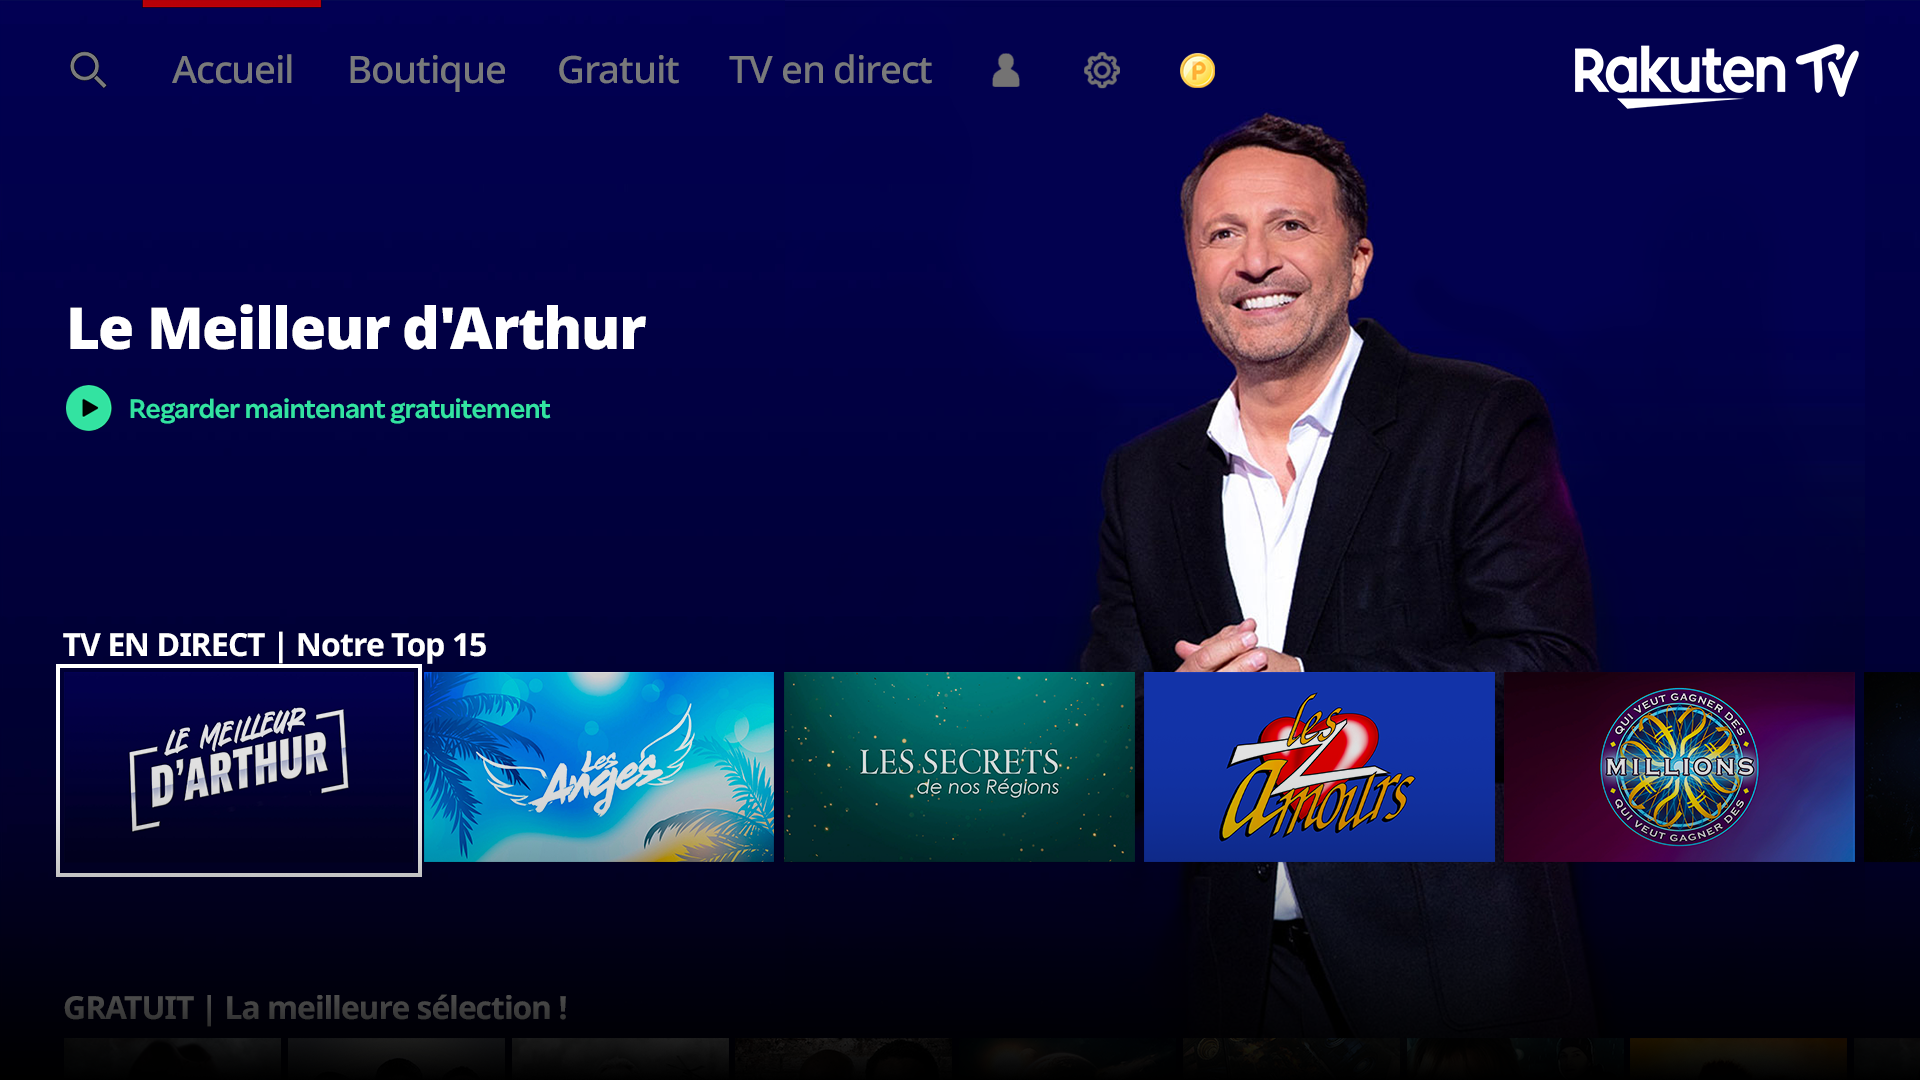 Rakuten TV : cinq nouvelles chaînes FAST pour la France